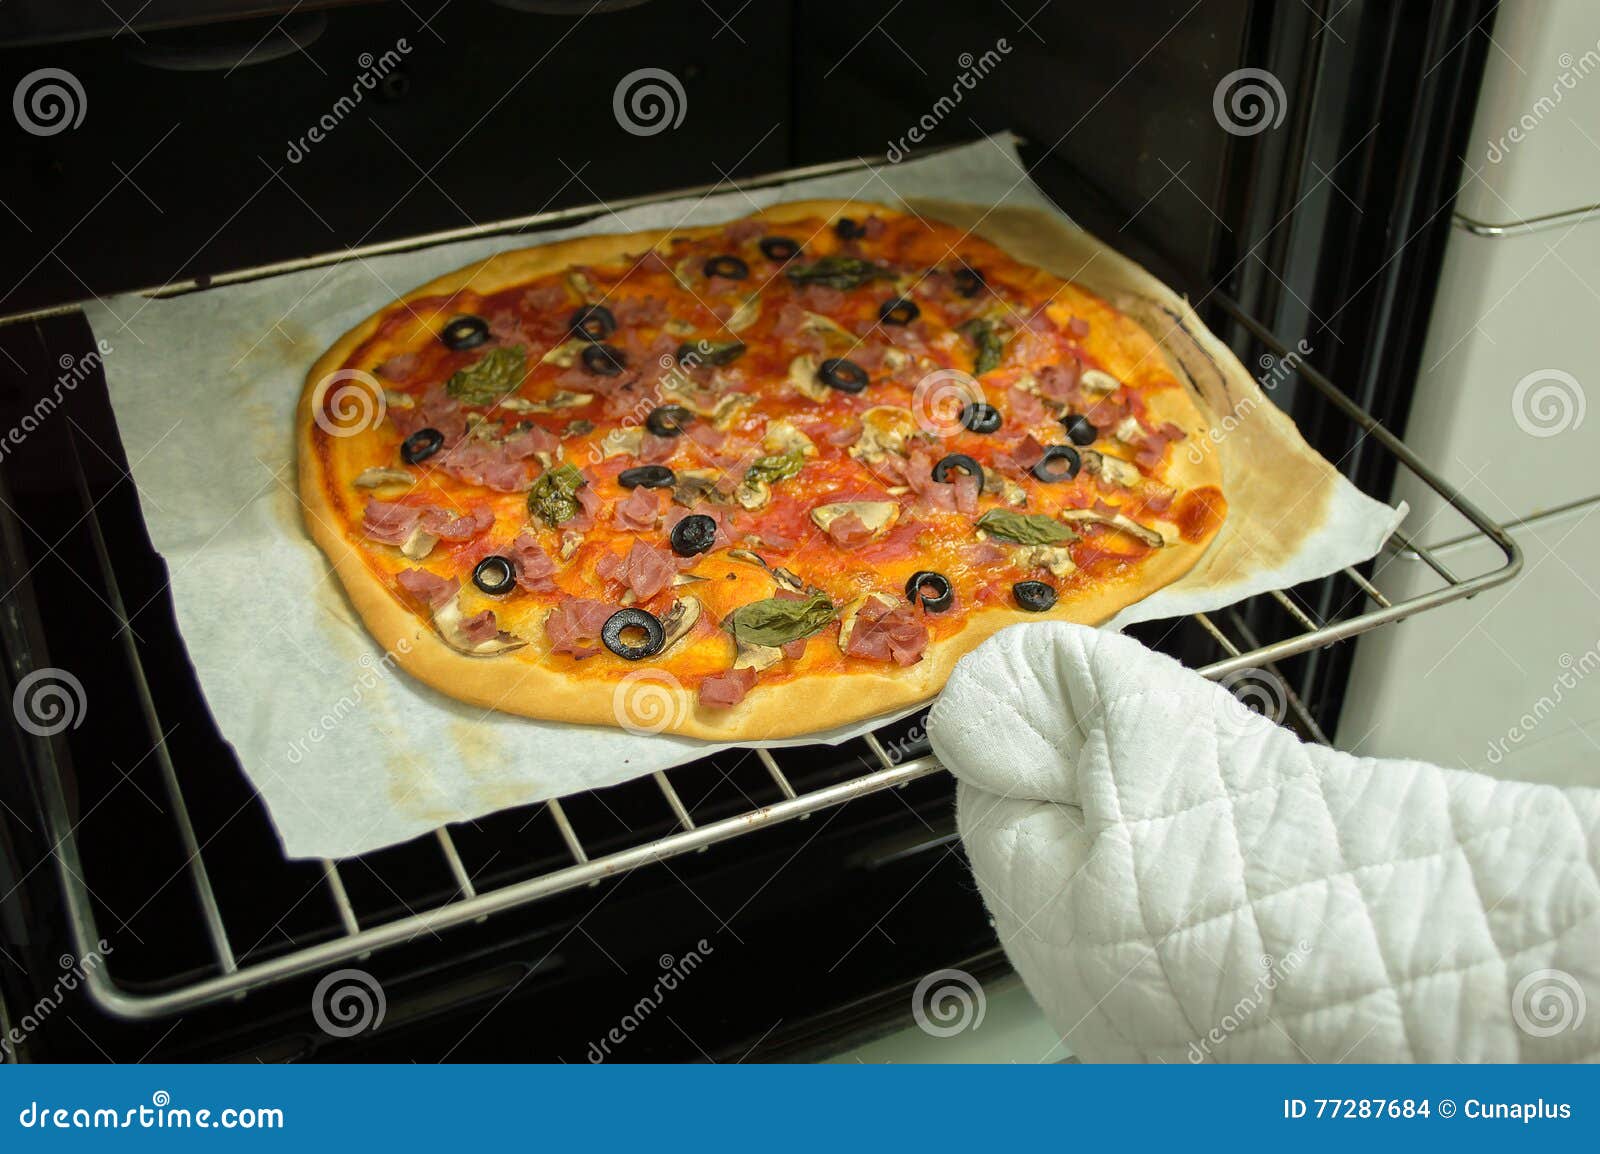 2 пиццы в одной духовке фото 68